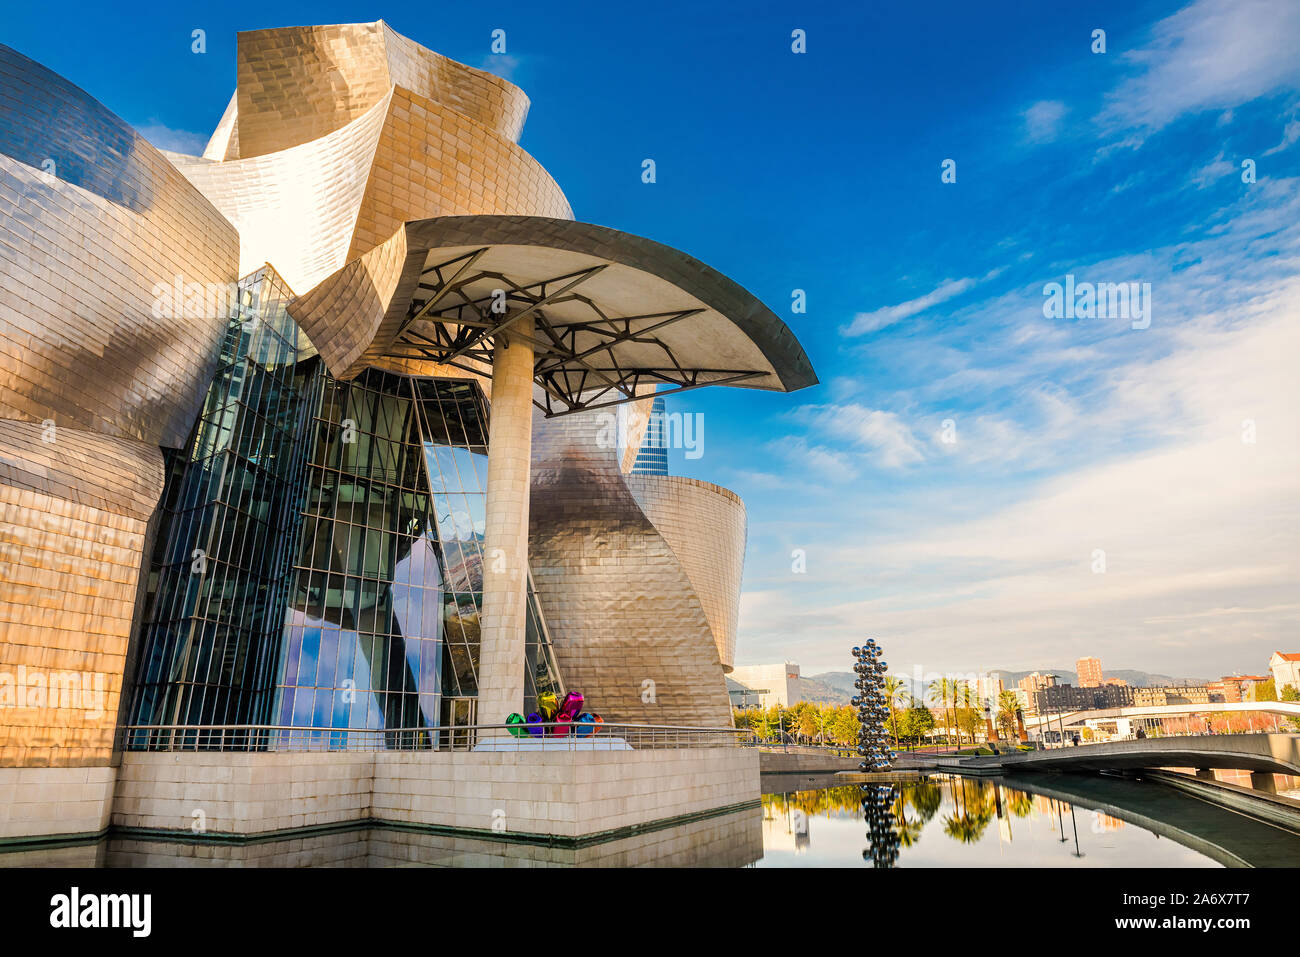 Stadt Bilbao, Spanien im November 19, 2015 - Aufnahmen von Spanien - Reisen Europa, 19. November 2015 Stockfoto